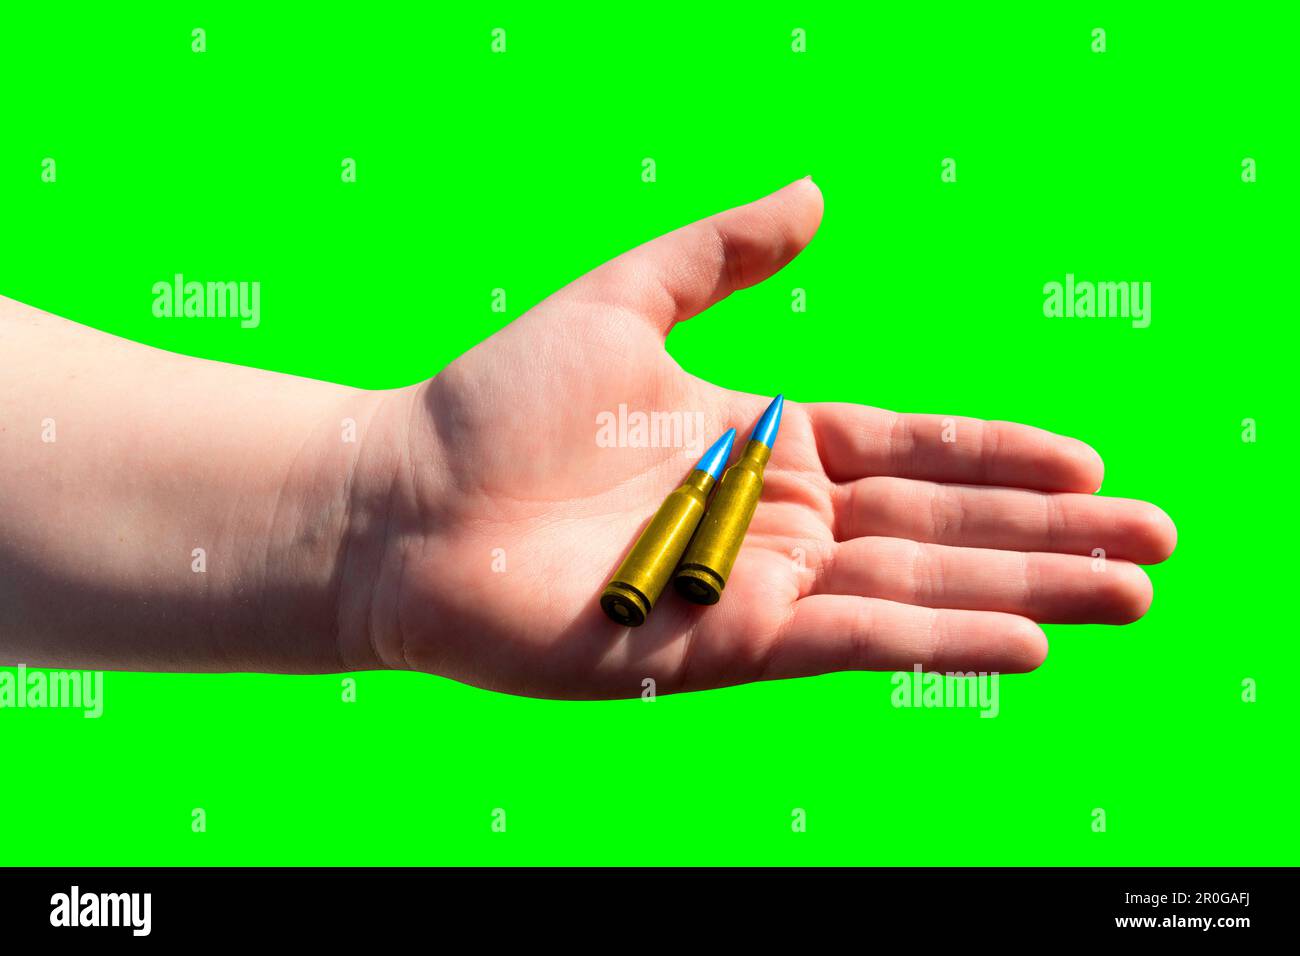 Zwei gelb-blaue Patronen in einer Hand auf grünem Hintergrund (Chroma-Taste). Nationale Symbole der Ukraine. Das Konzept der militärischen Unterstützung für die Ukraine Stockfoto